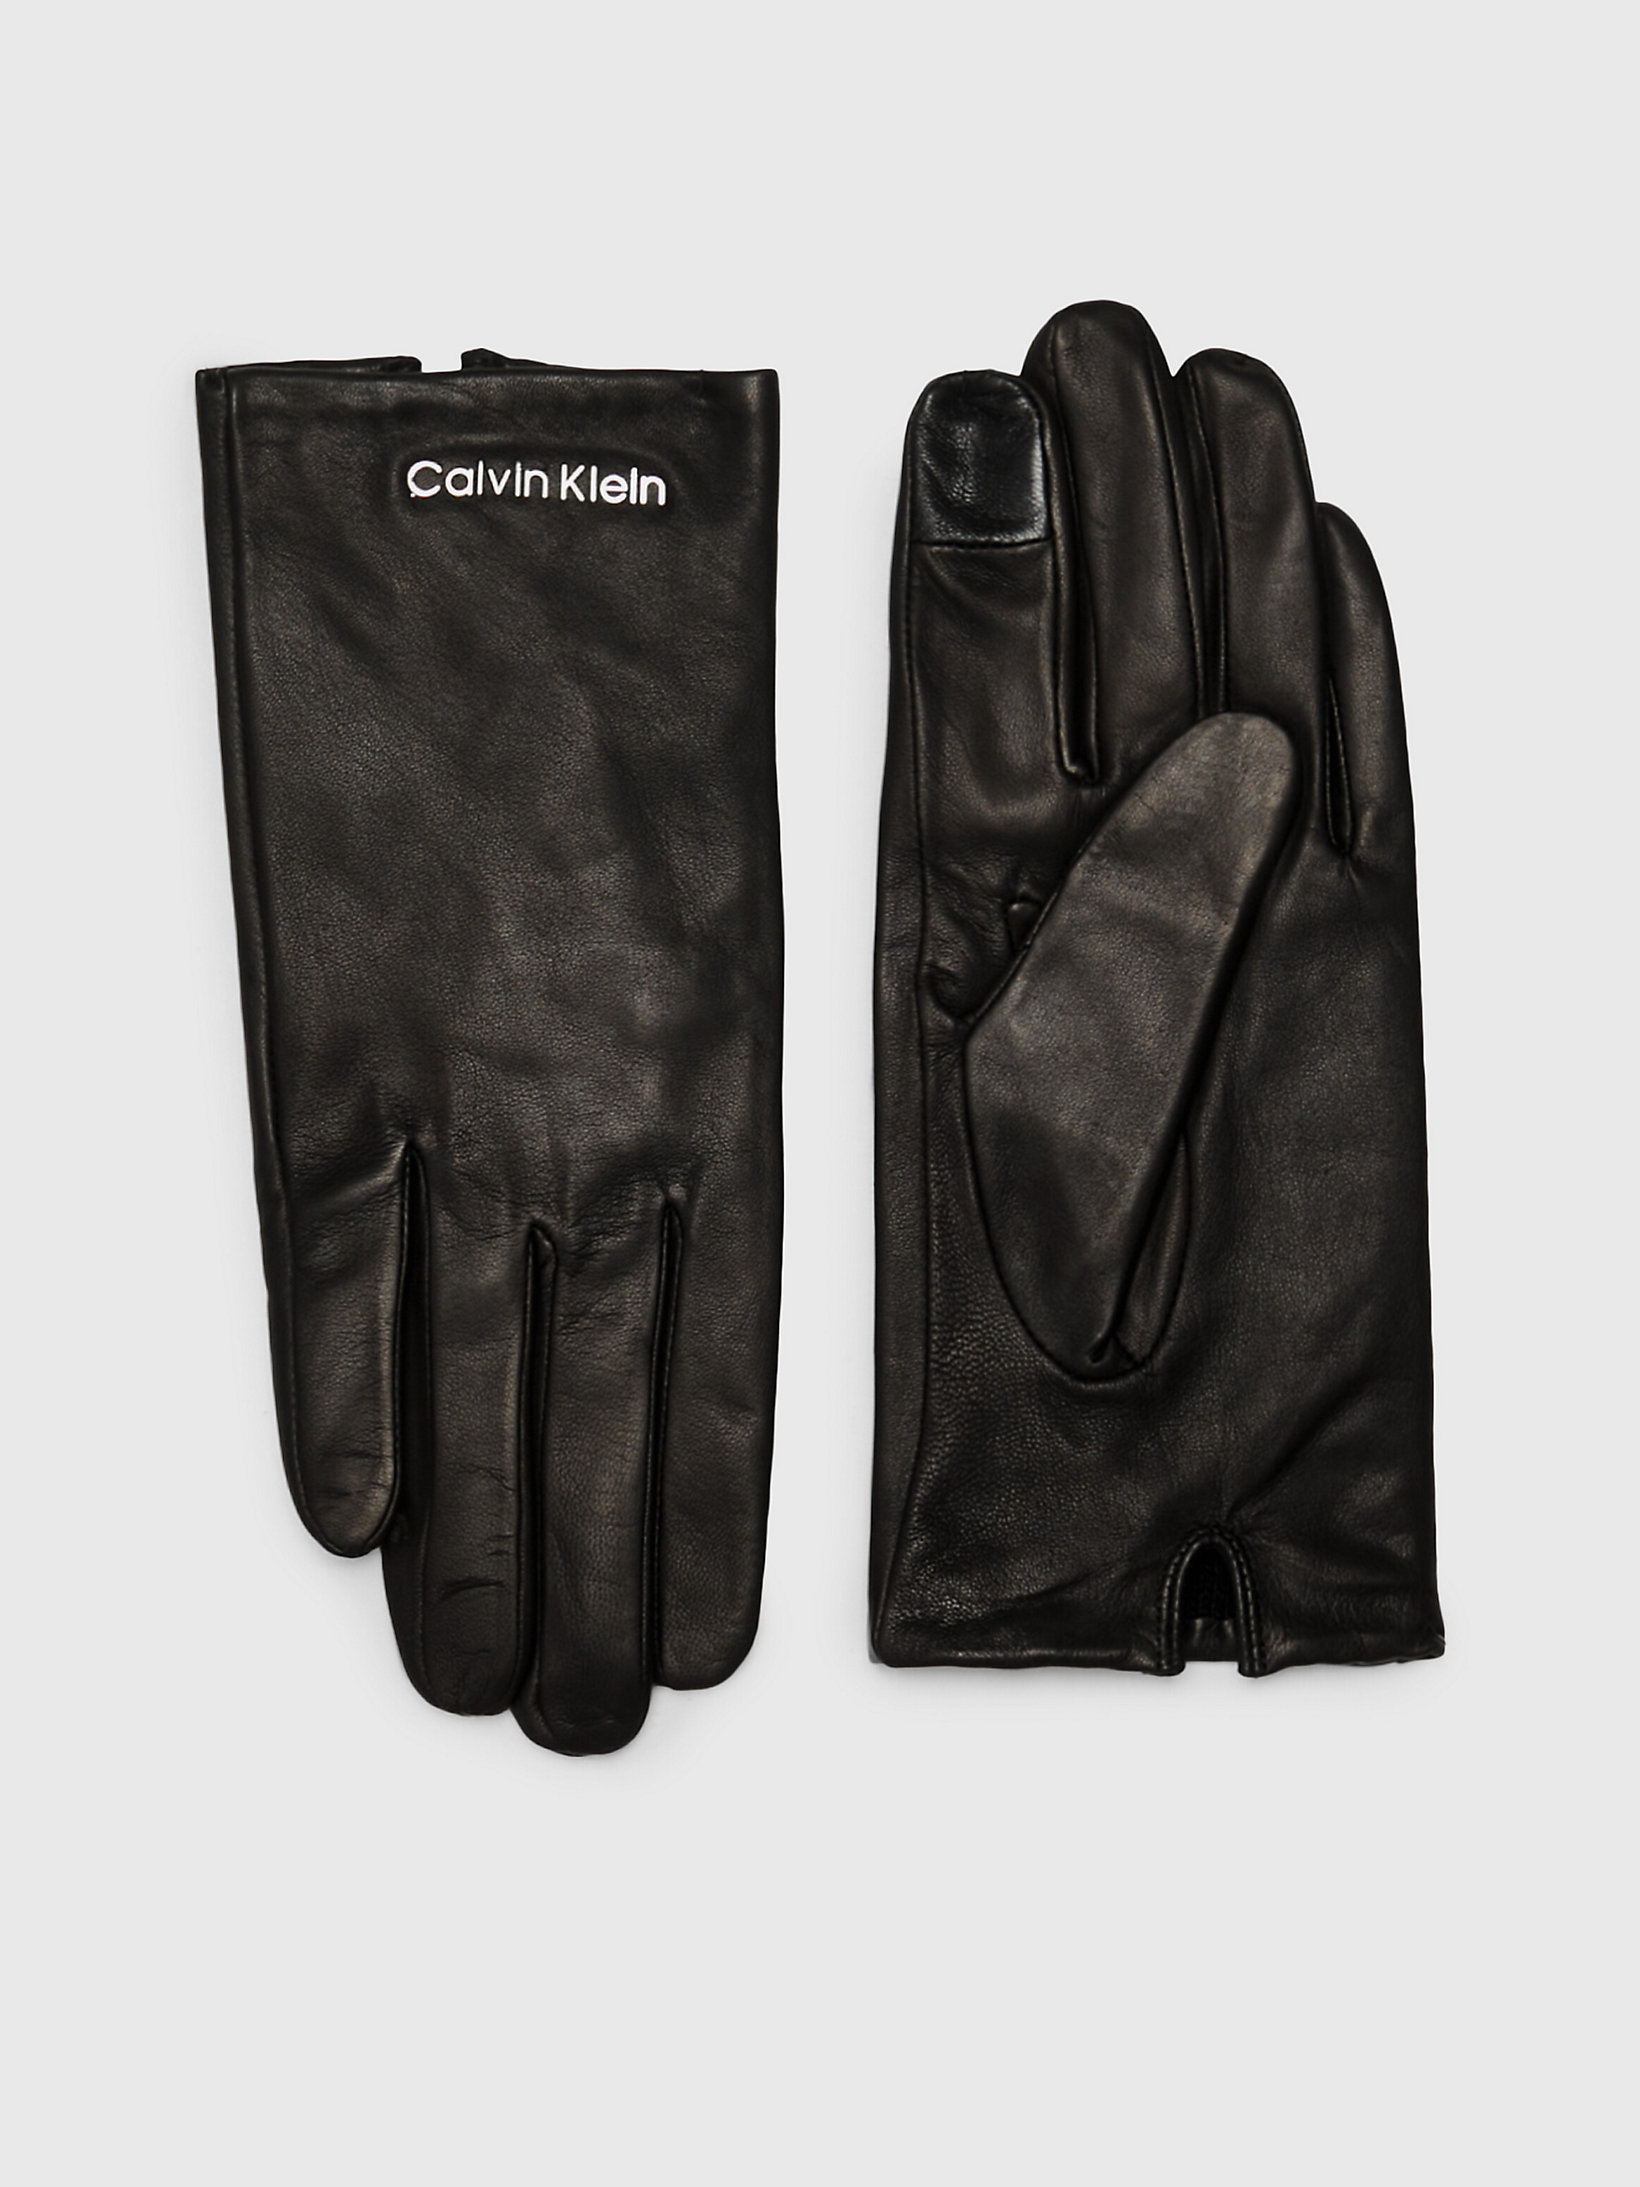 CK Black Leather Gloves undefined women Calvin Klein